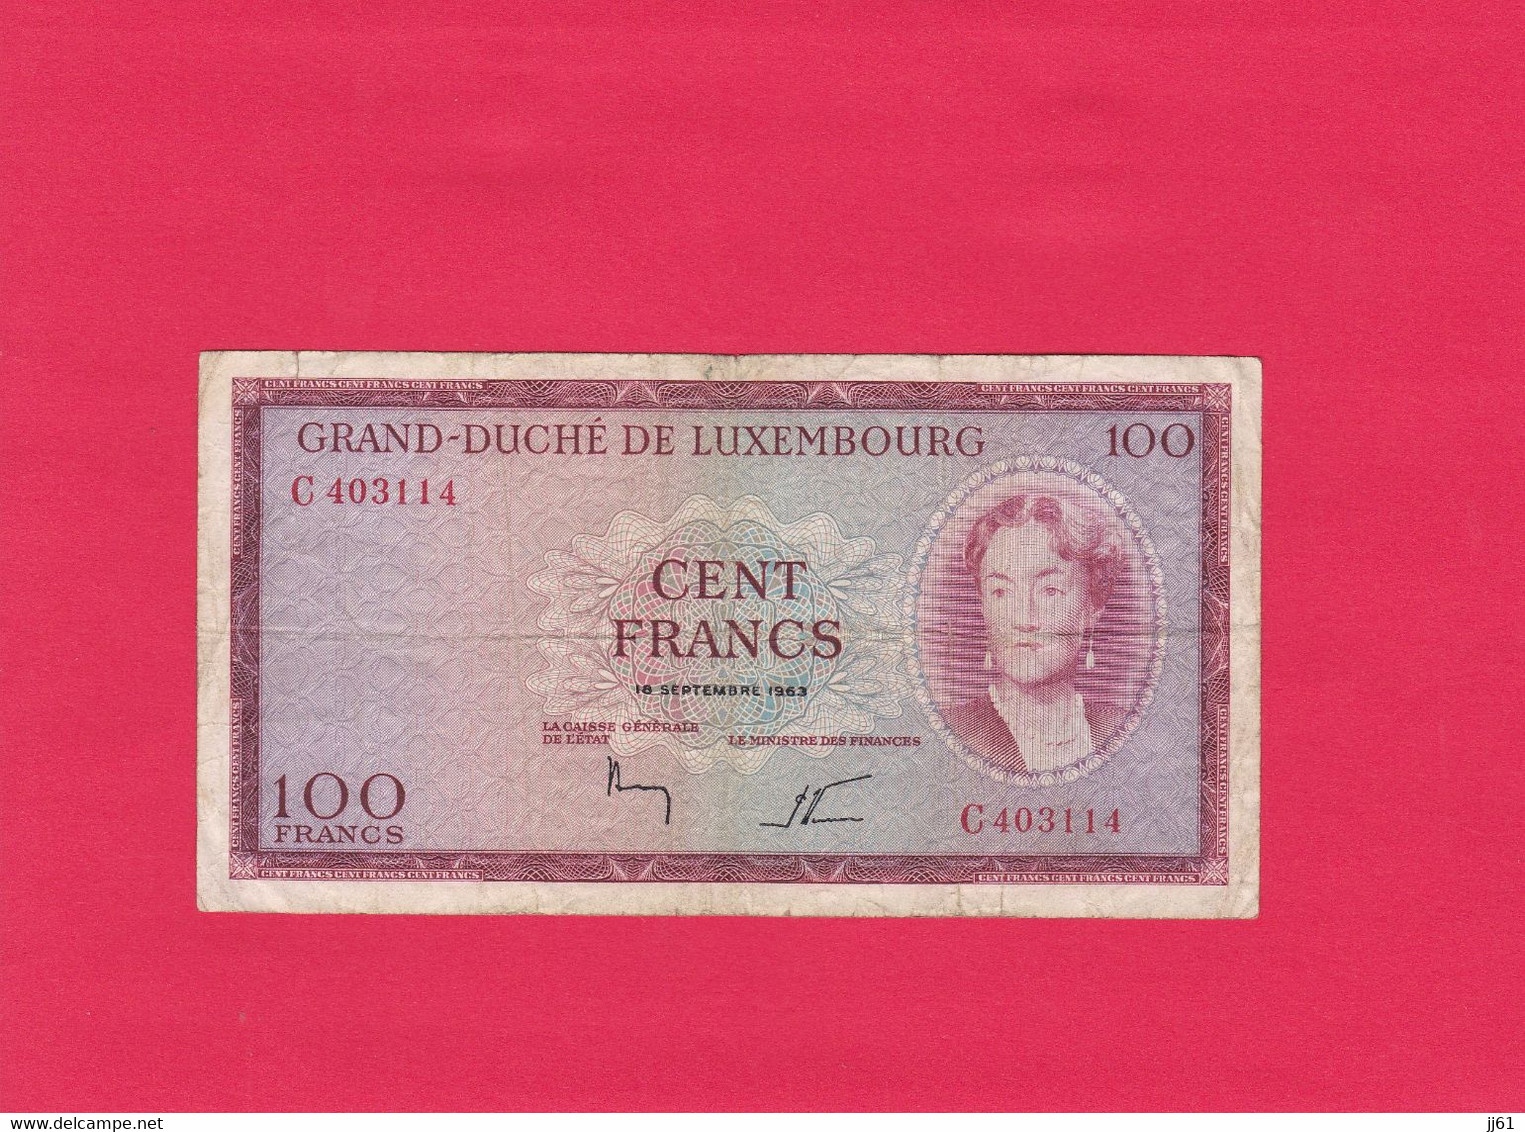 BILLET GRAND DUCHE DE LUXEMBOURG CENT FRANCS N° C403114 18 SEPTEMBRE 1963 ETAT D USAGE PLIURES AU MILIEU TACHES NORMAL - Luxemburgo